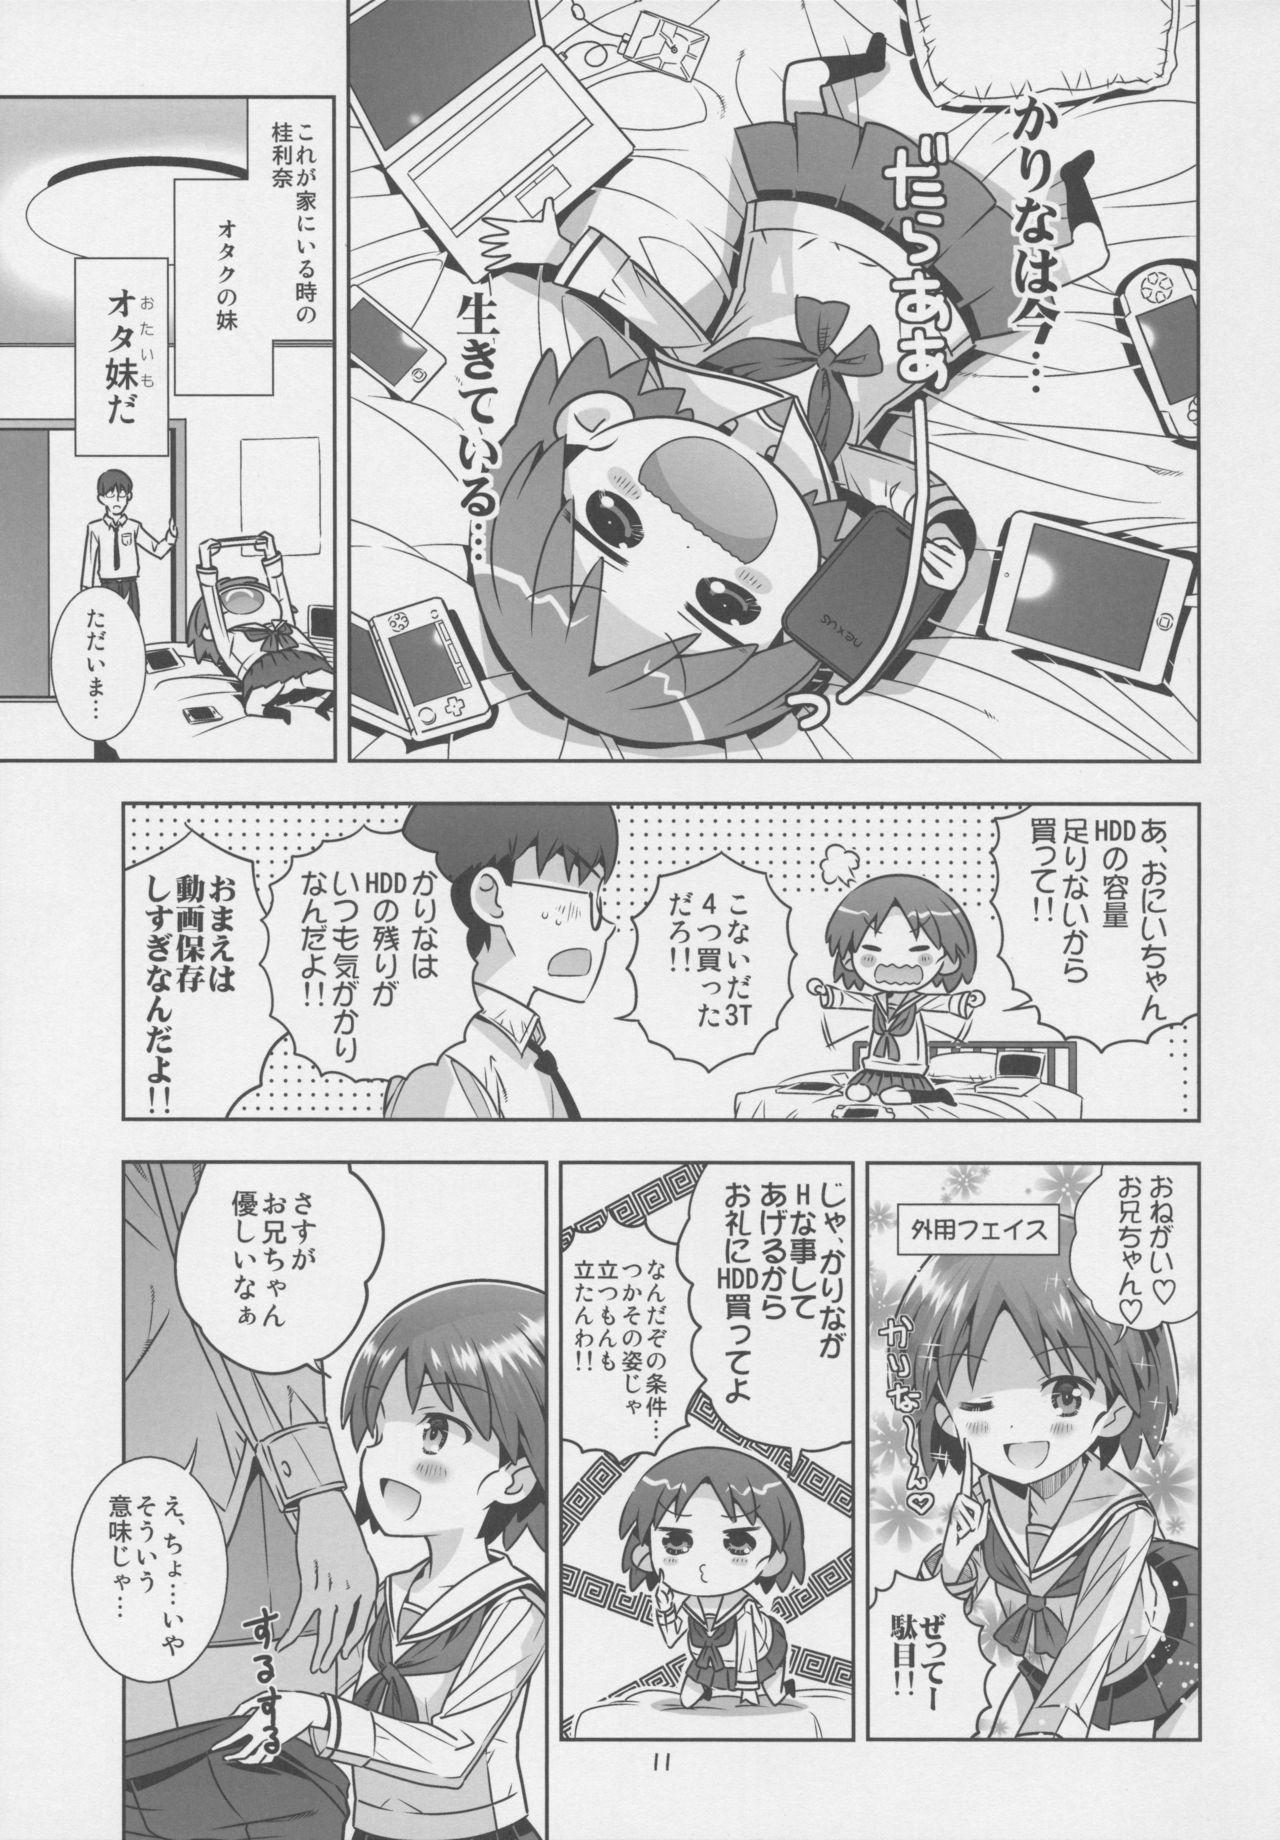 Hand Job "AV Shutsuen, Ganbarimasu!!" Ichinensei wa, M-ji Kaikyaku 3 Peace desu! - Girls und panzer Cruising - Page 10